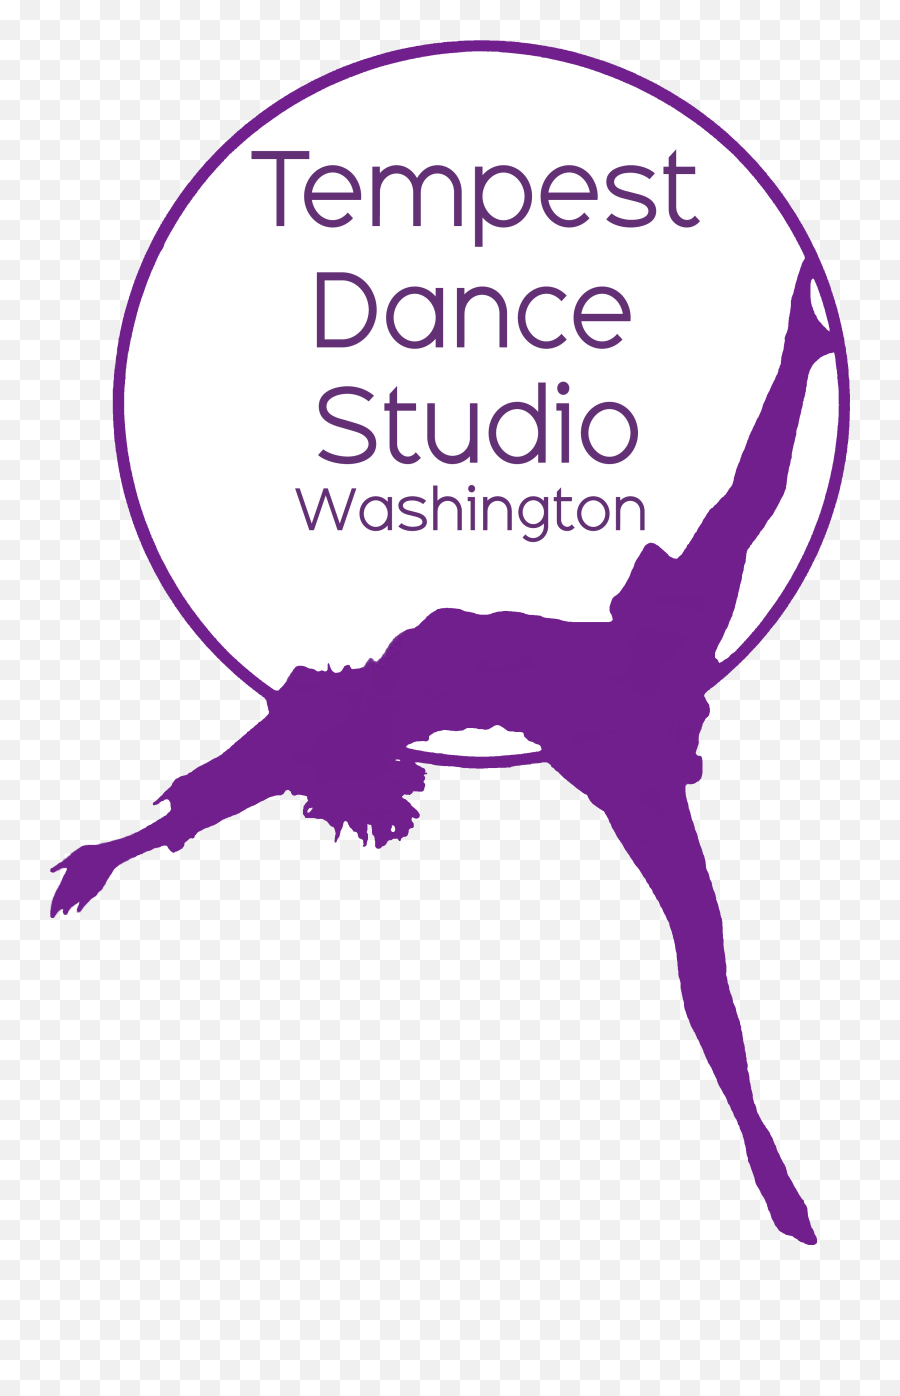 Tempest Dance Studio Washington - Tempest Dance Studio Png,Tempest Icon